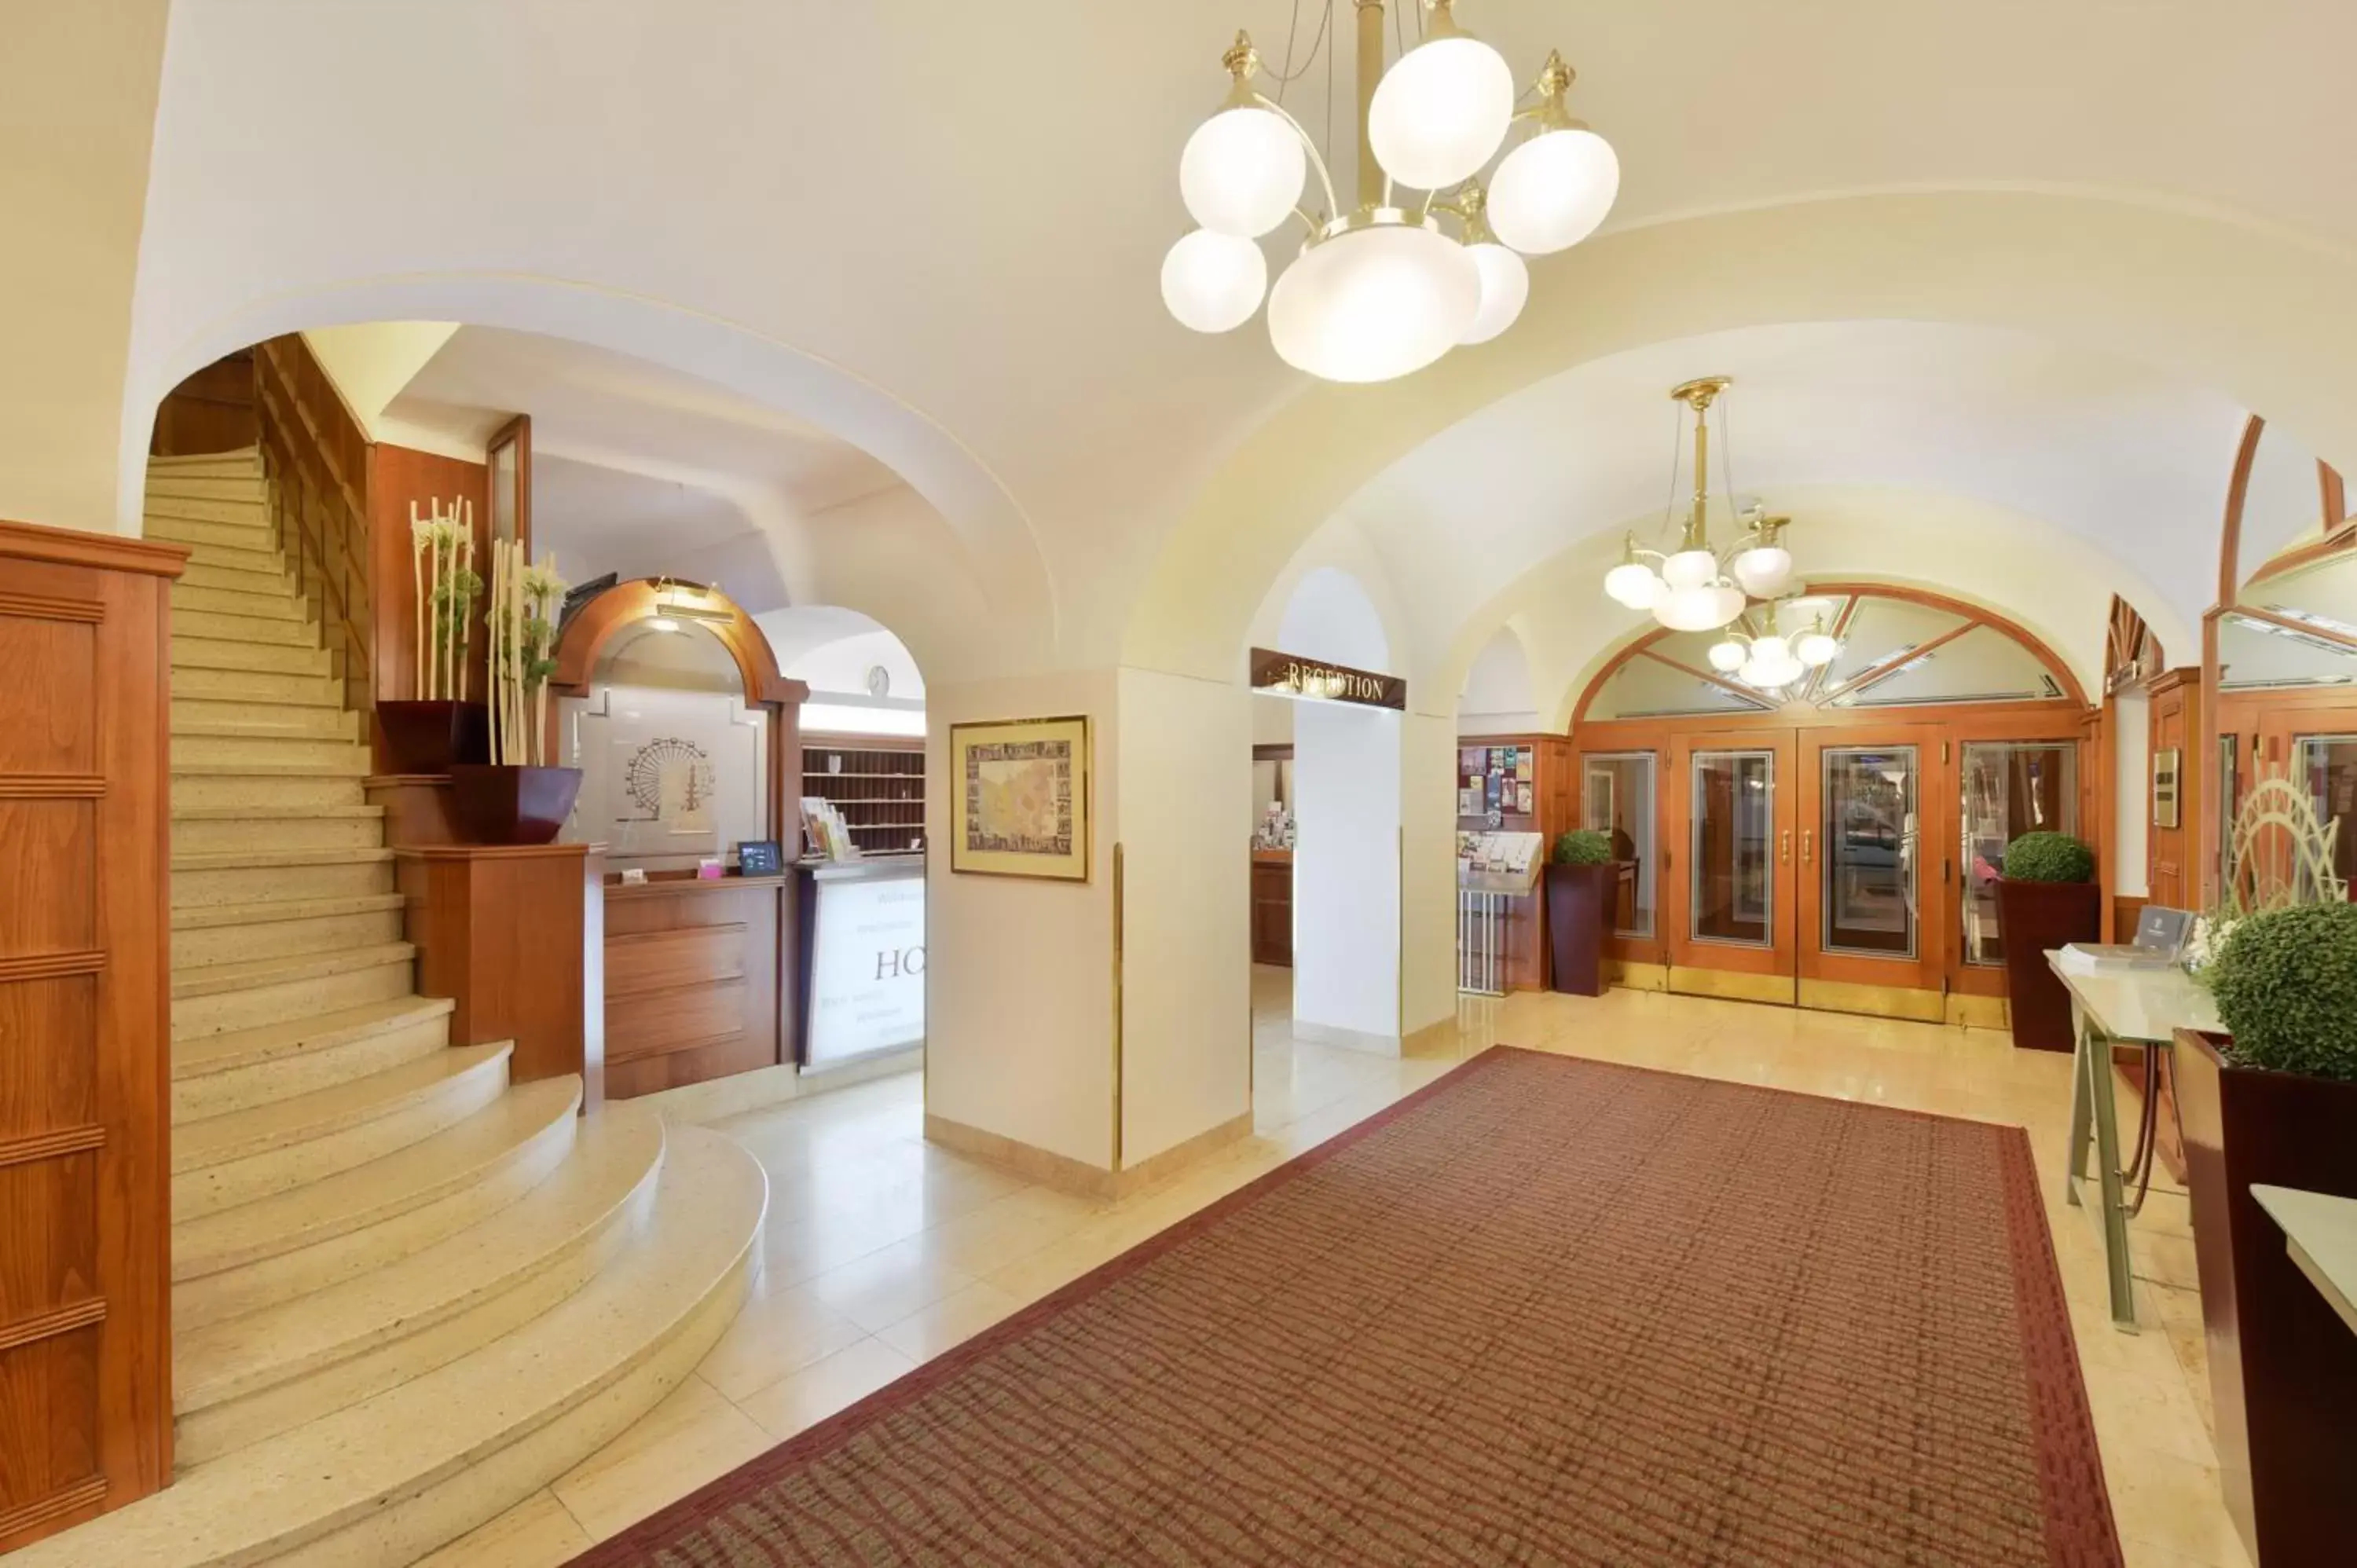 Lobby or reception, Lobby/Reception in Austria Classic Hotel Wien